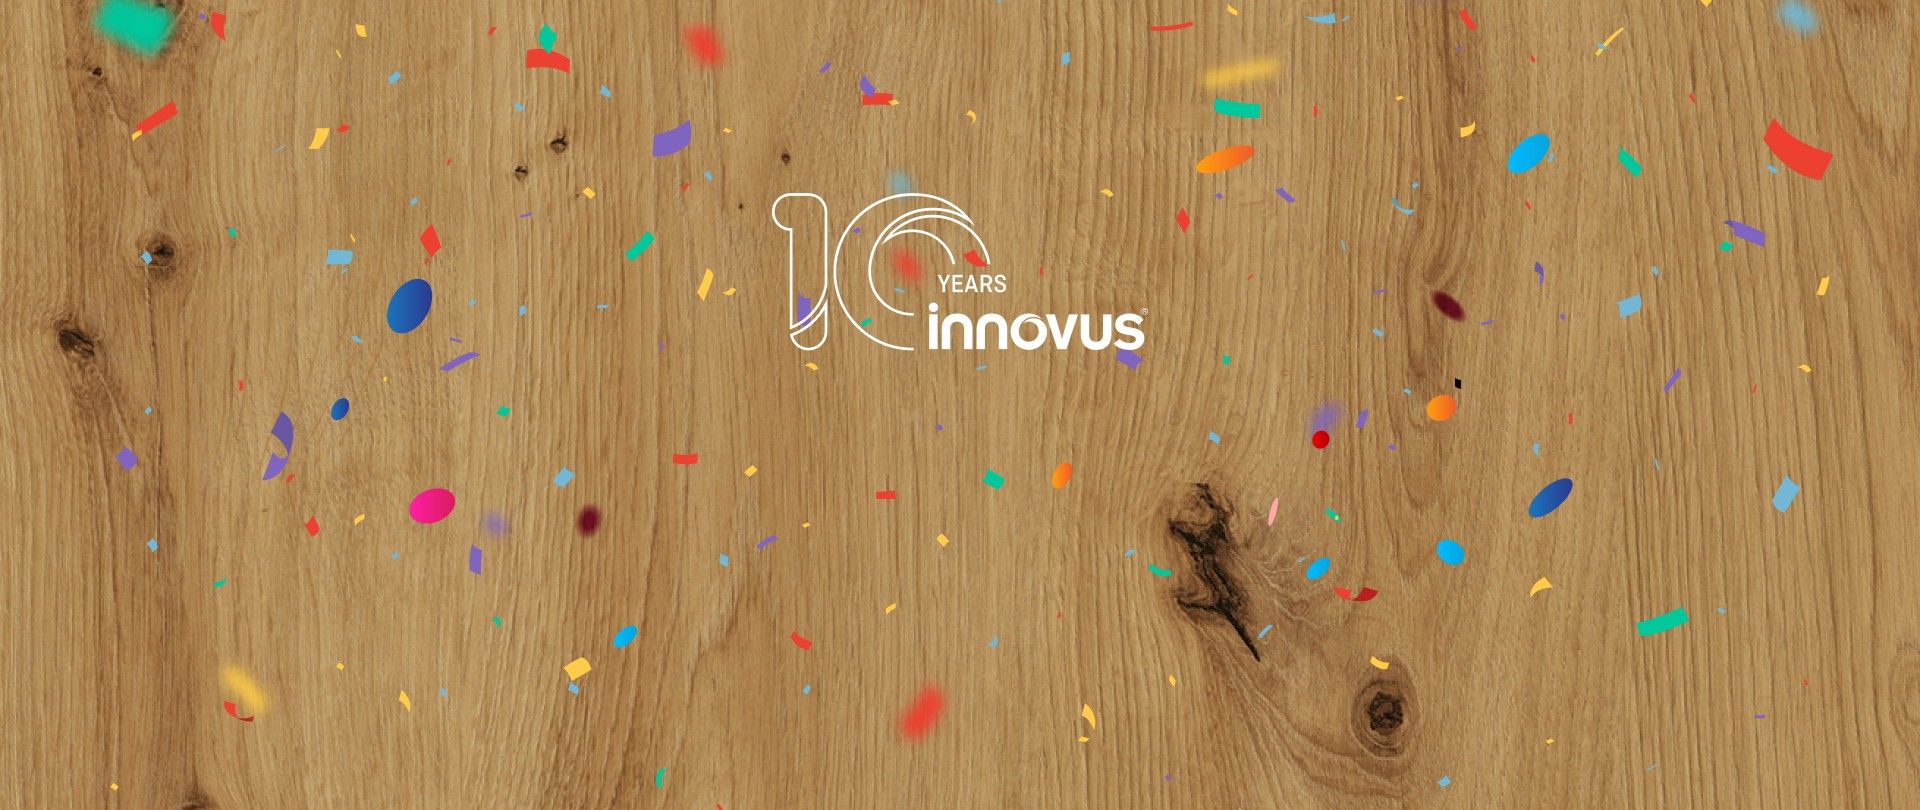 La marca de decorativos Innovus celebra 10 años